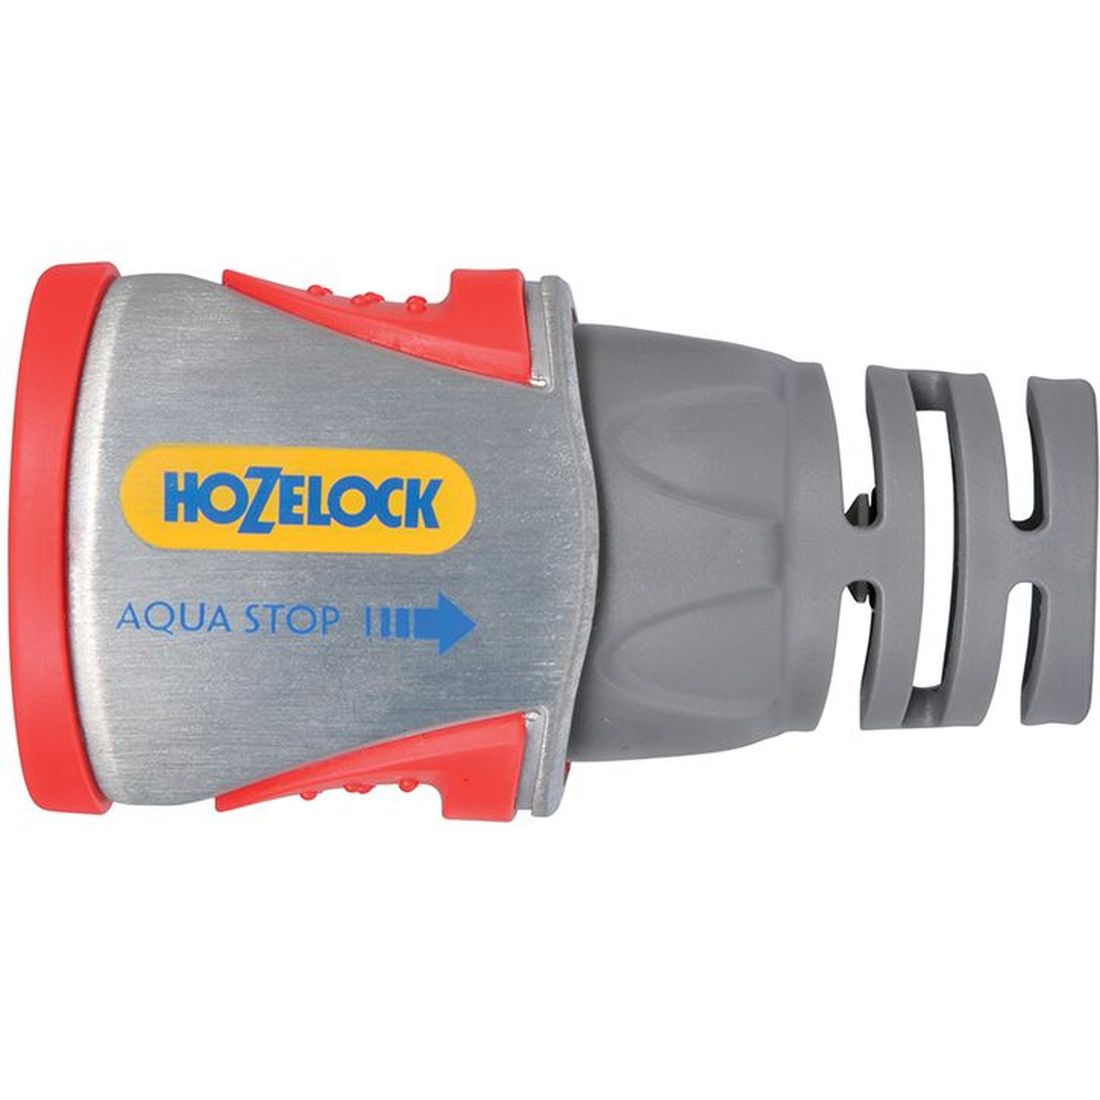 Hozelock 2035 Pro Metal AquaStop Hose Connector 12.5-15mm (1/2-5/8in)                    